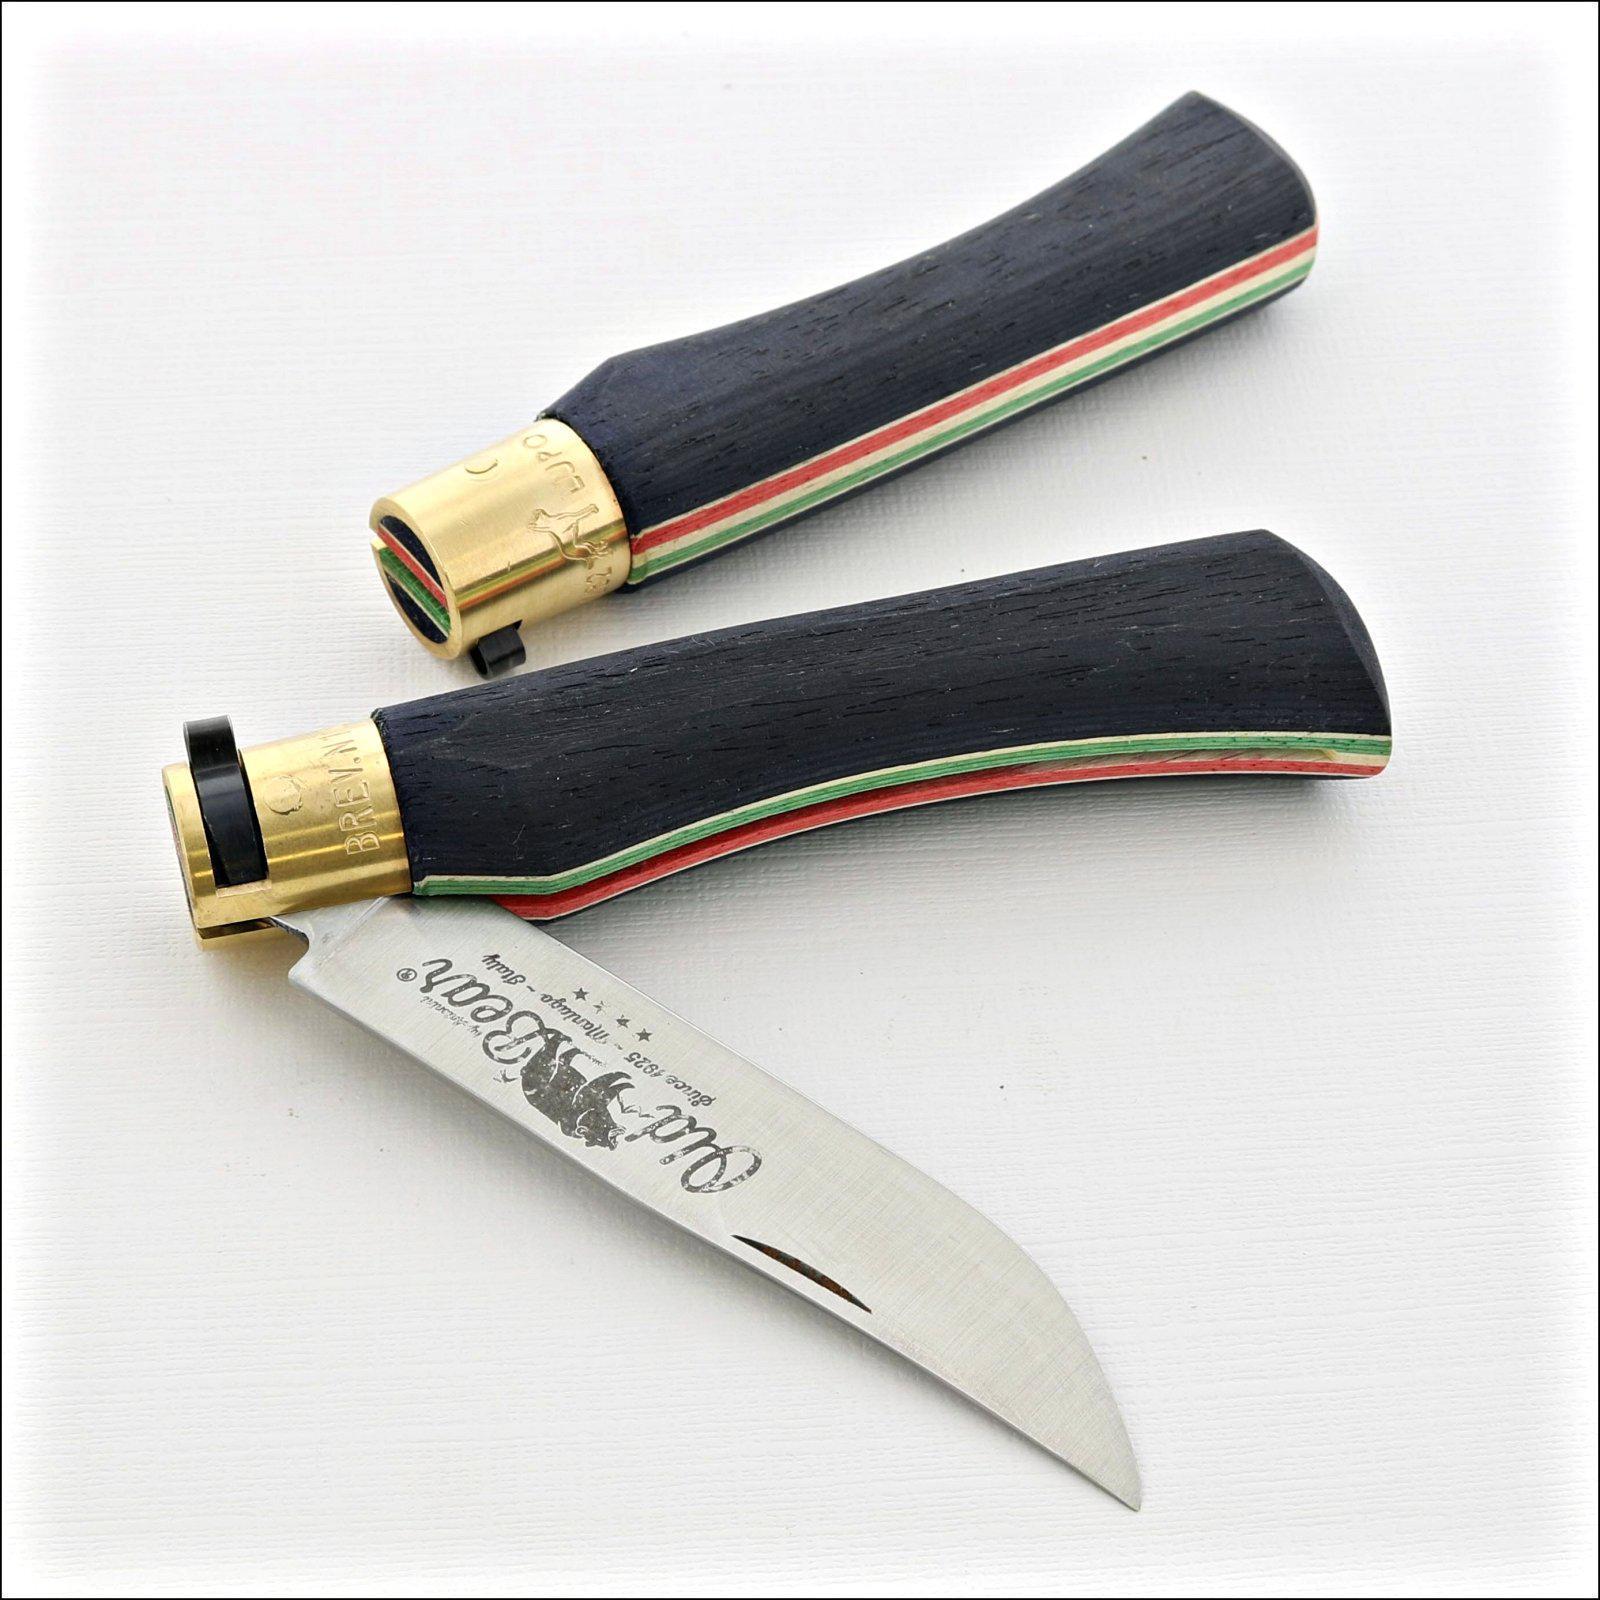 ITALY - Old Bear No23 Pocket Knife